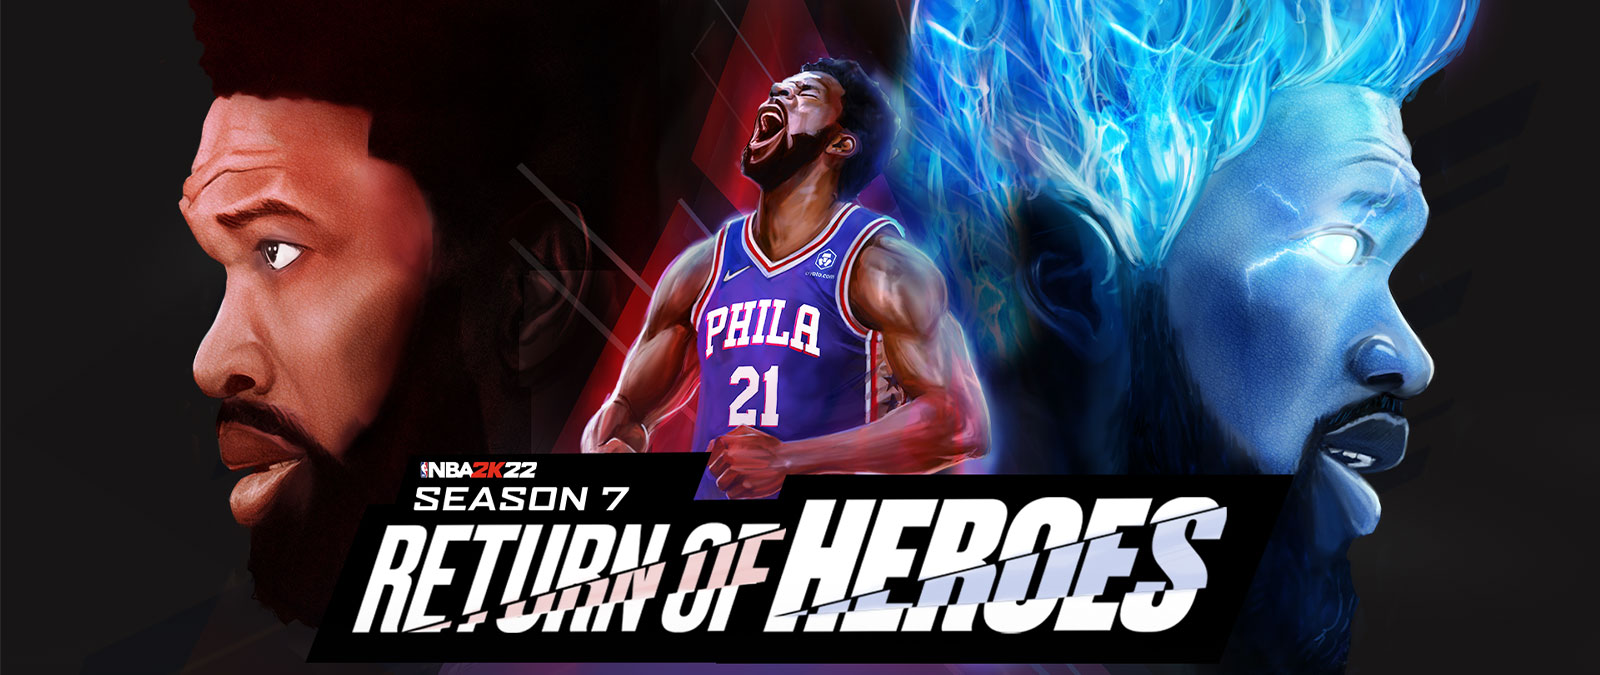 NBA 2K22, Temporada 7, Return of Heros, un jugador de Filadelfia grita al cielo y se enciende en llamas azules.